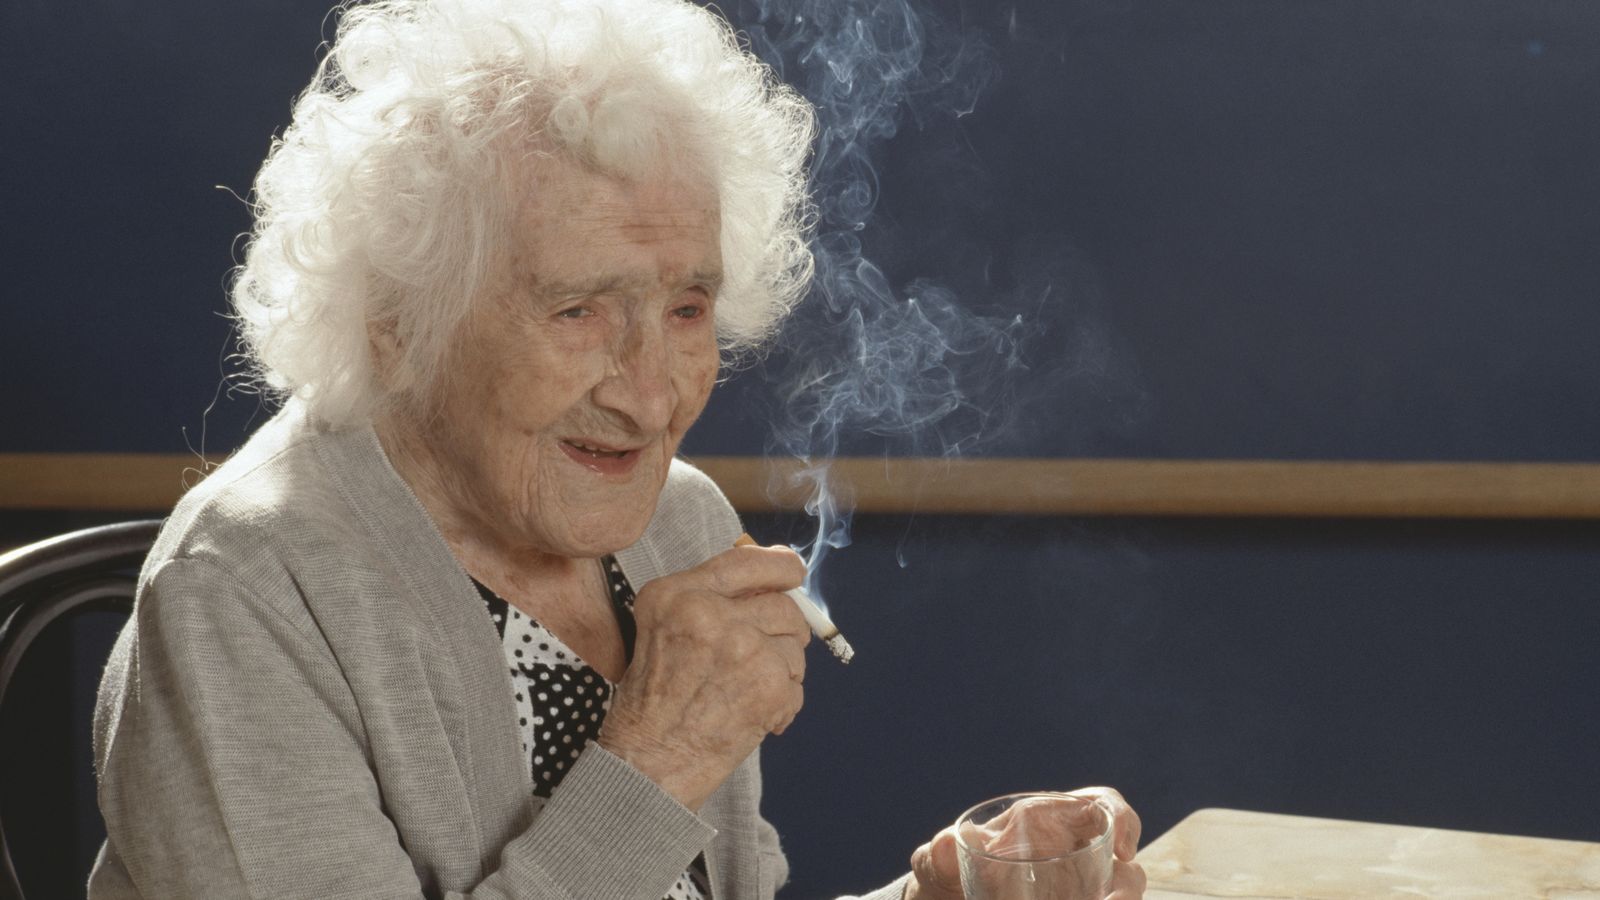 Foto: Jeanne Calment en el dia que, supuestamente, cumplió 117 cumpleaños. (Corbis)